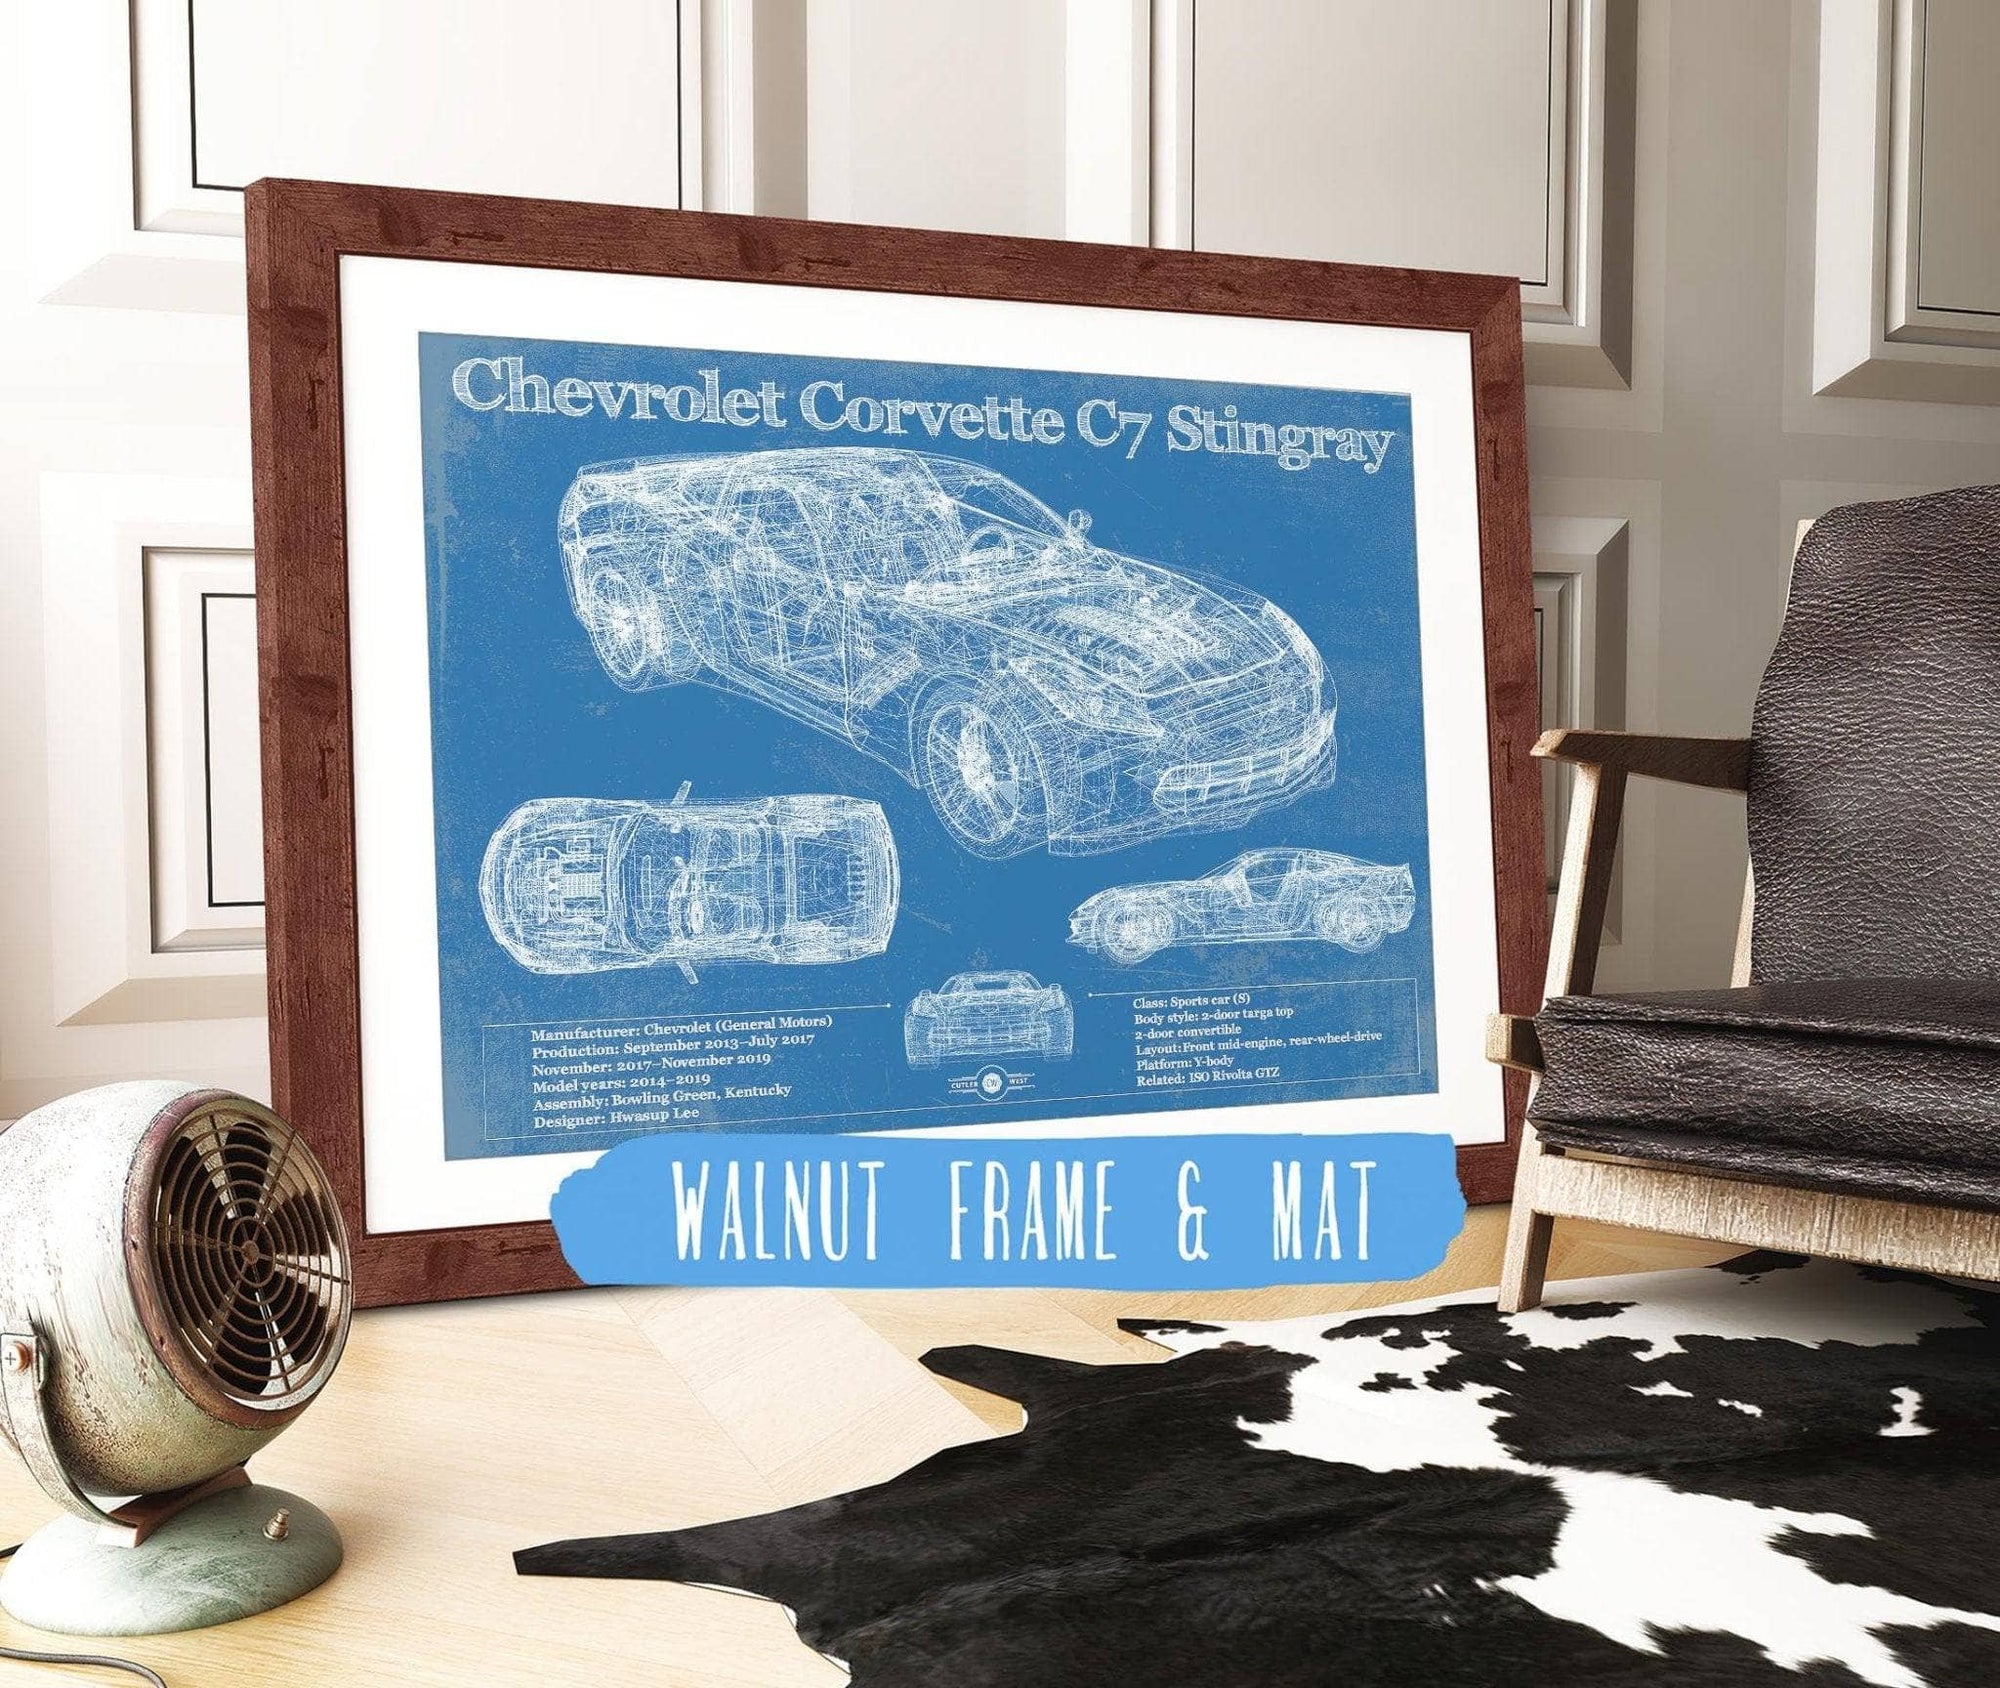 Cutler West Chevrolet Collection Chevrolet Corvette C7 Stingray Blueprint Vintage Auto Patent Print